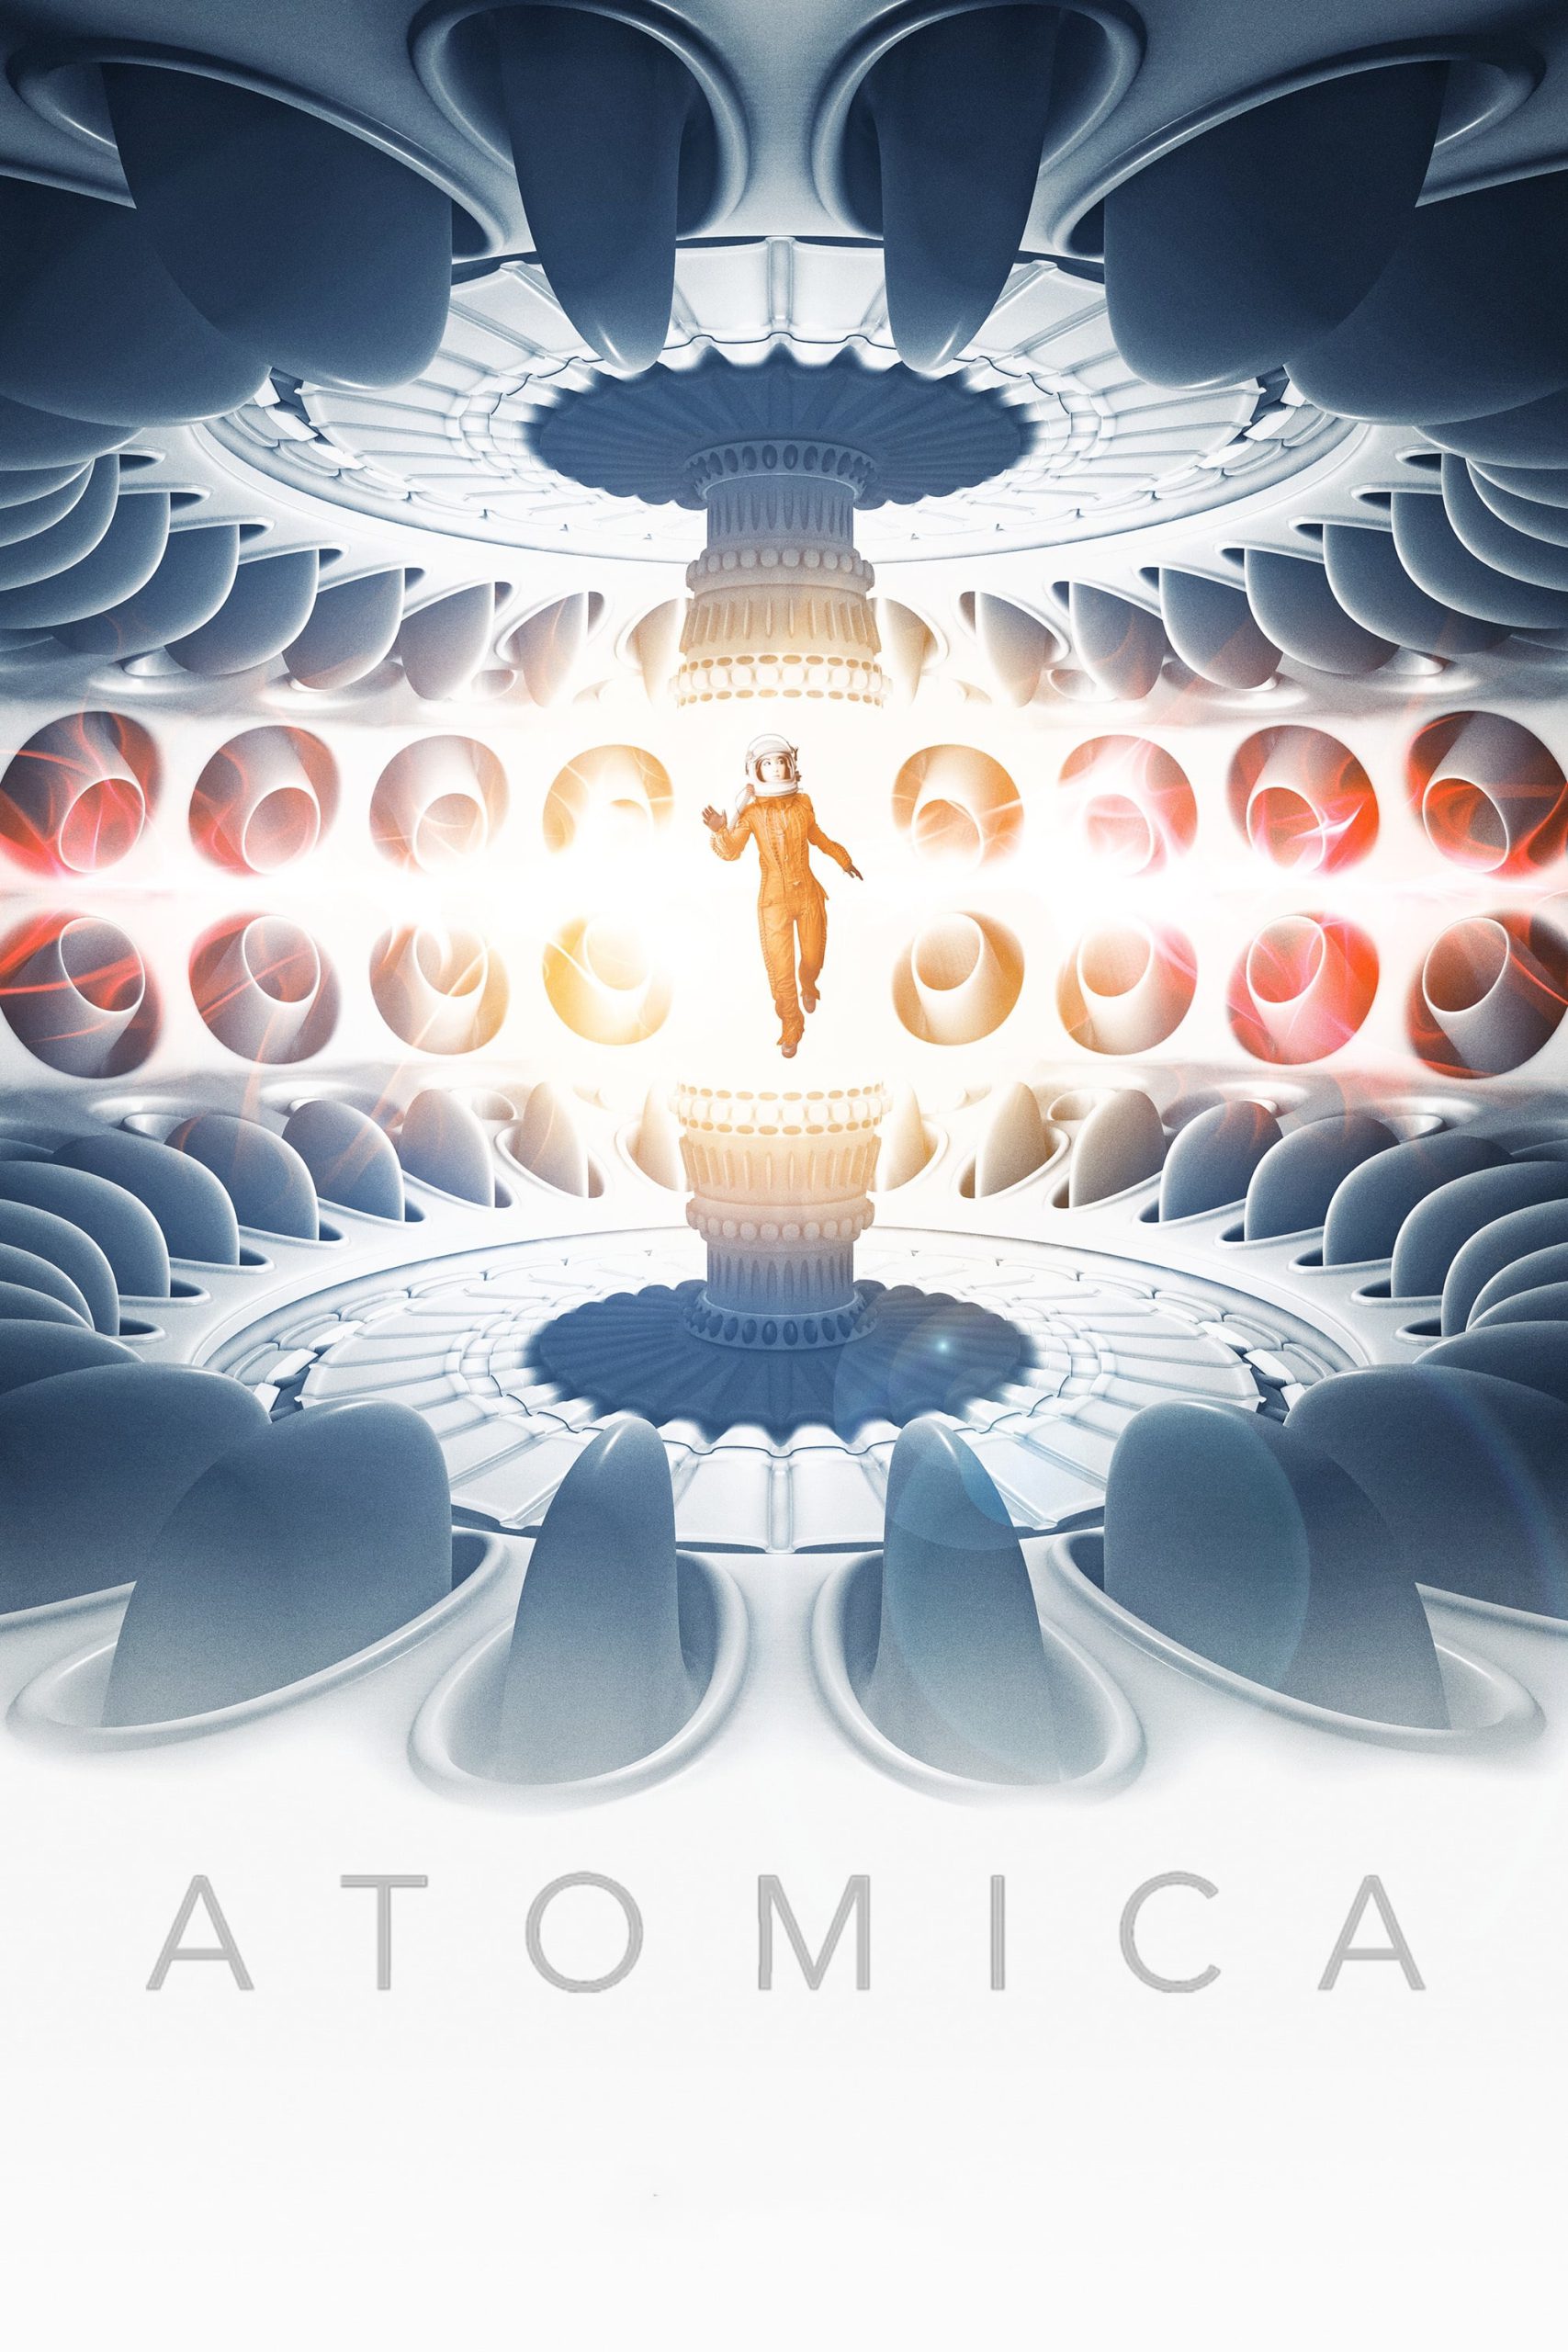 Atomica [Sub-ITA] (2017)